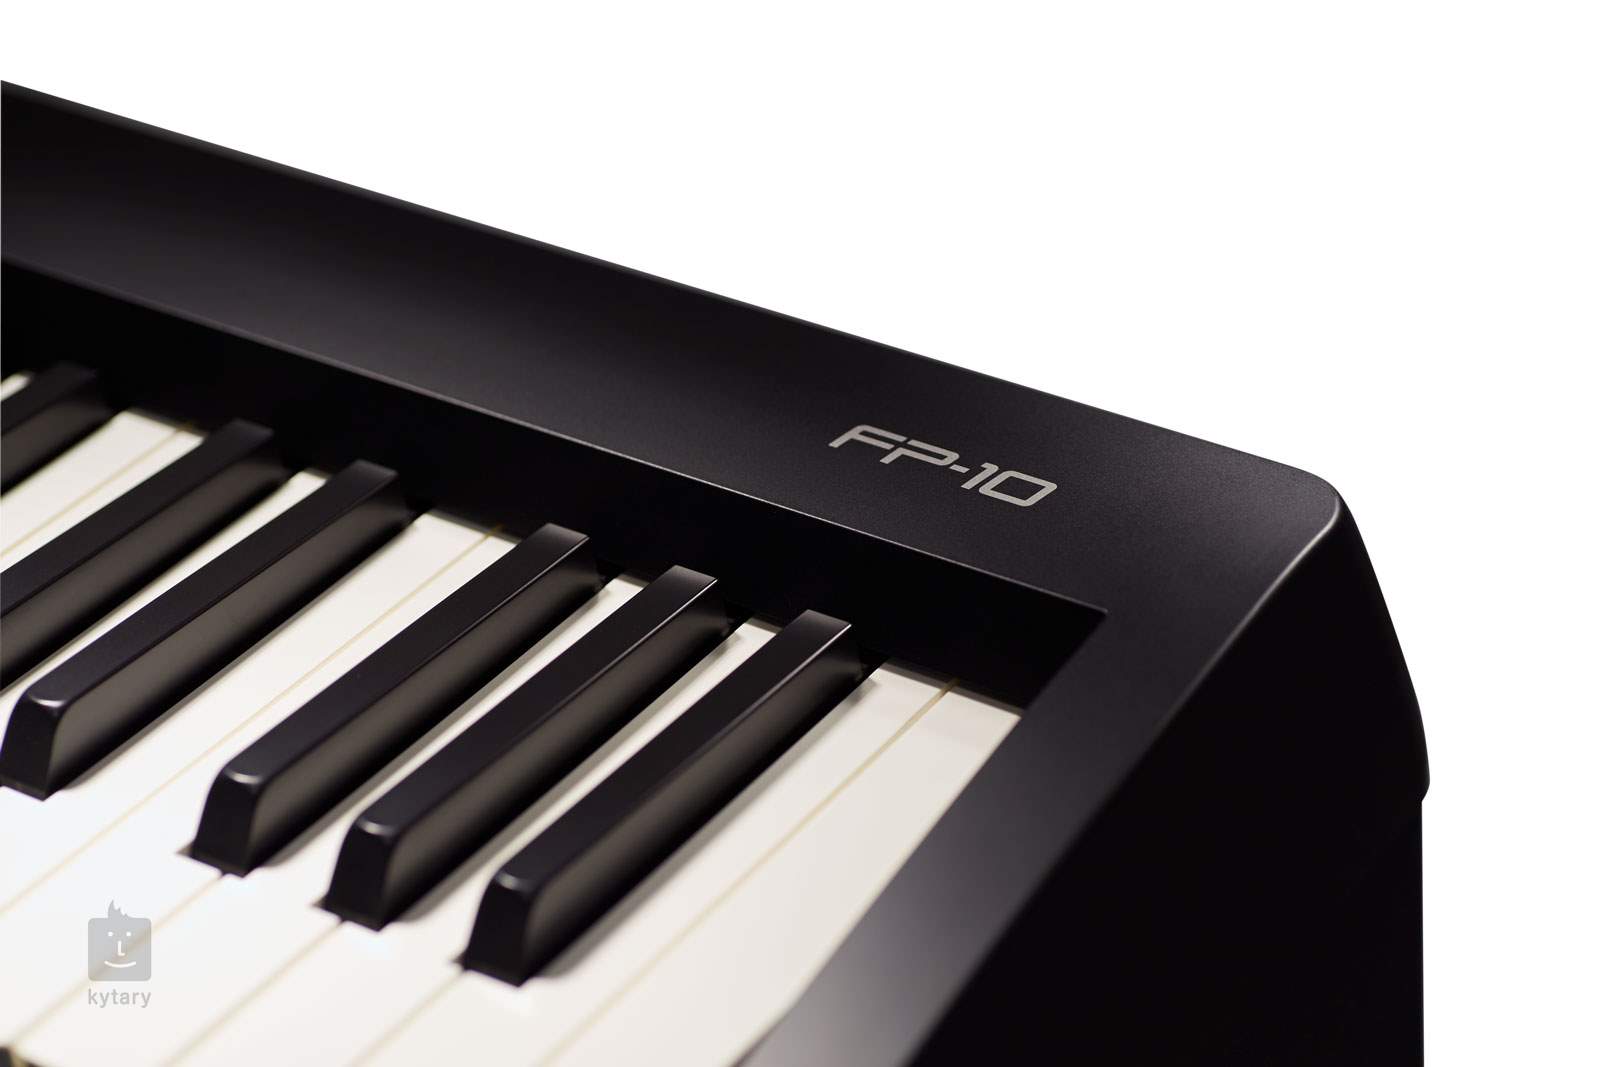 Roland FP-10 [EU] 88-Note Digital Piano (Black)